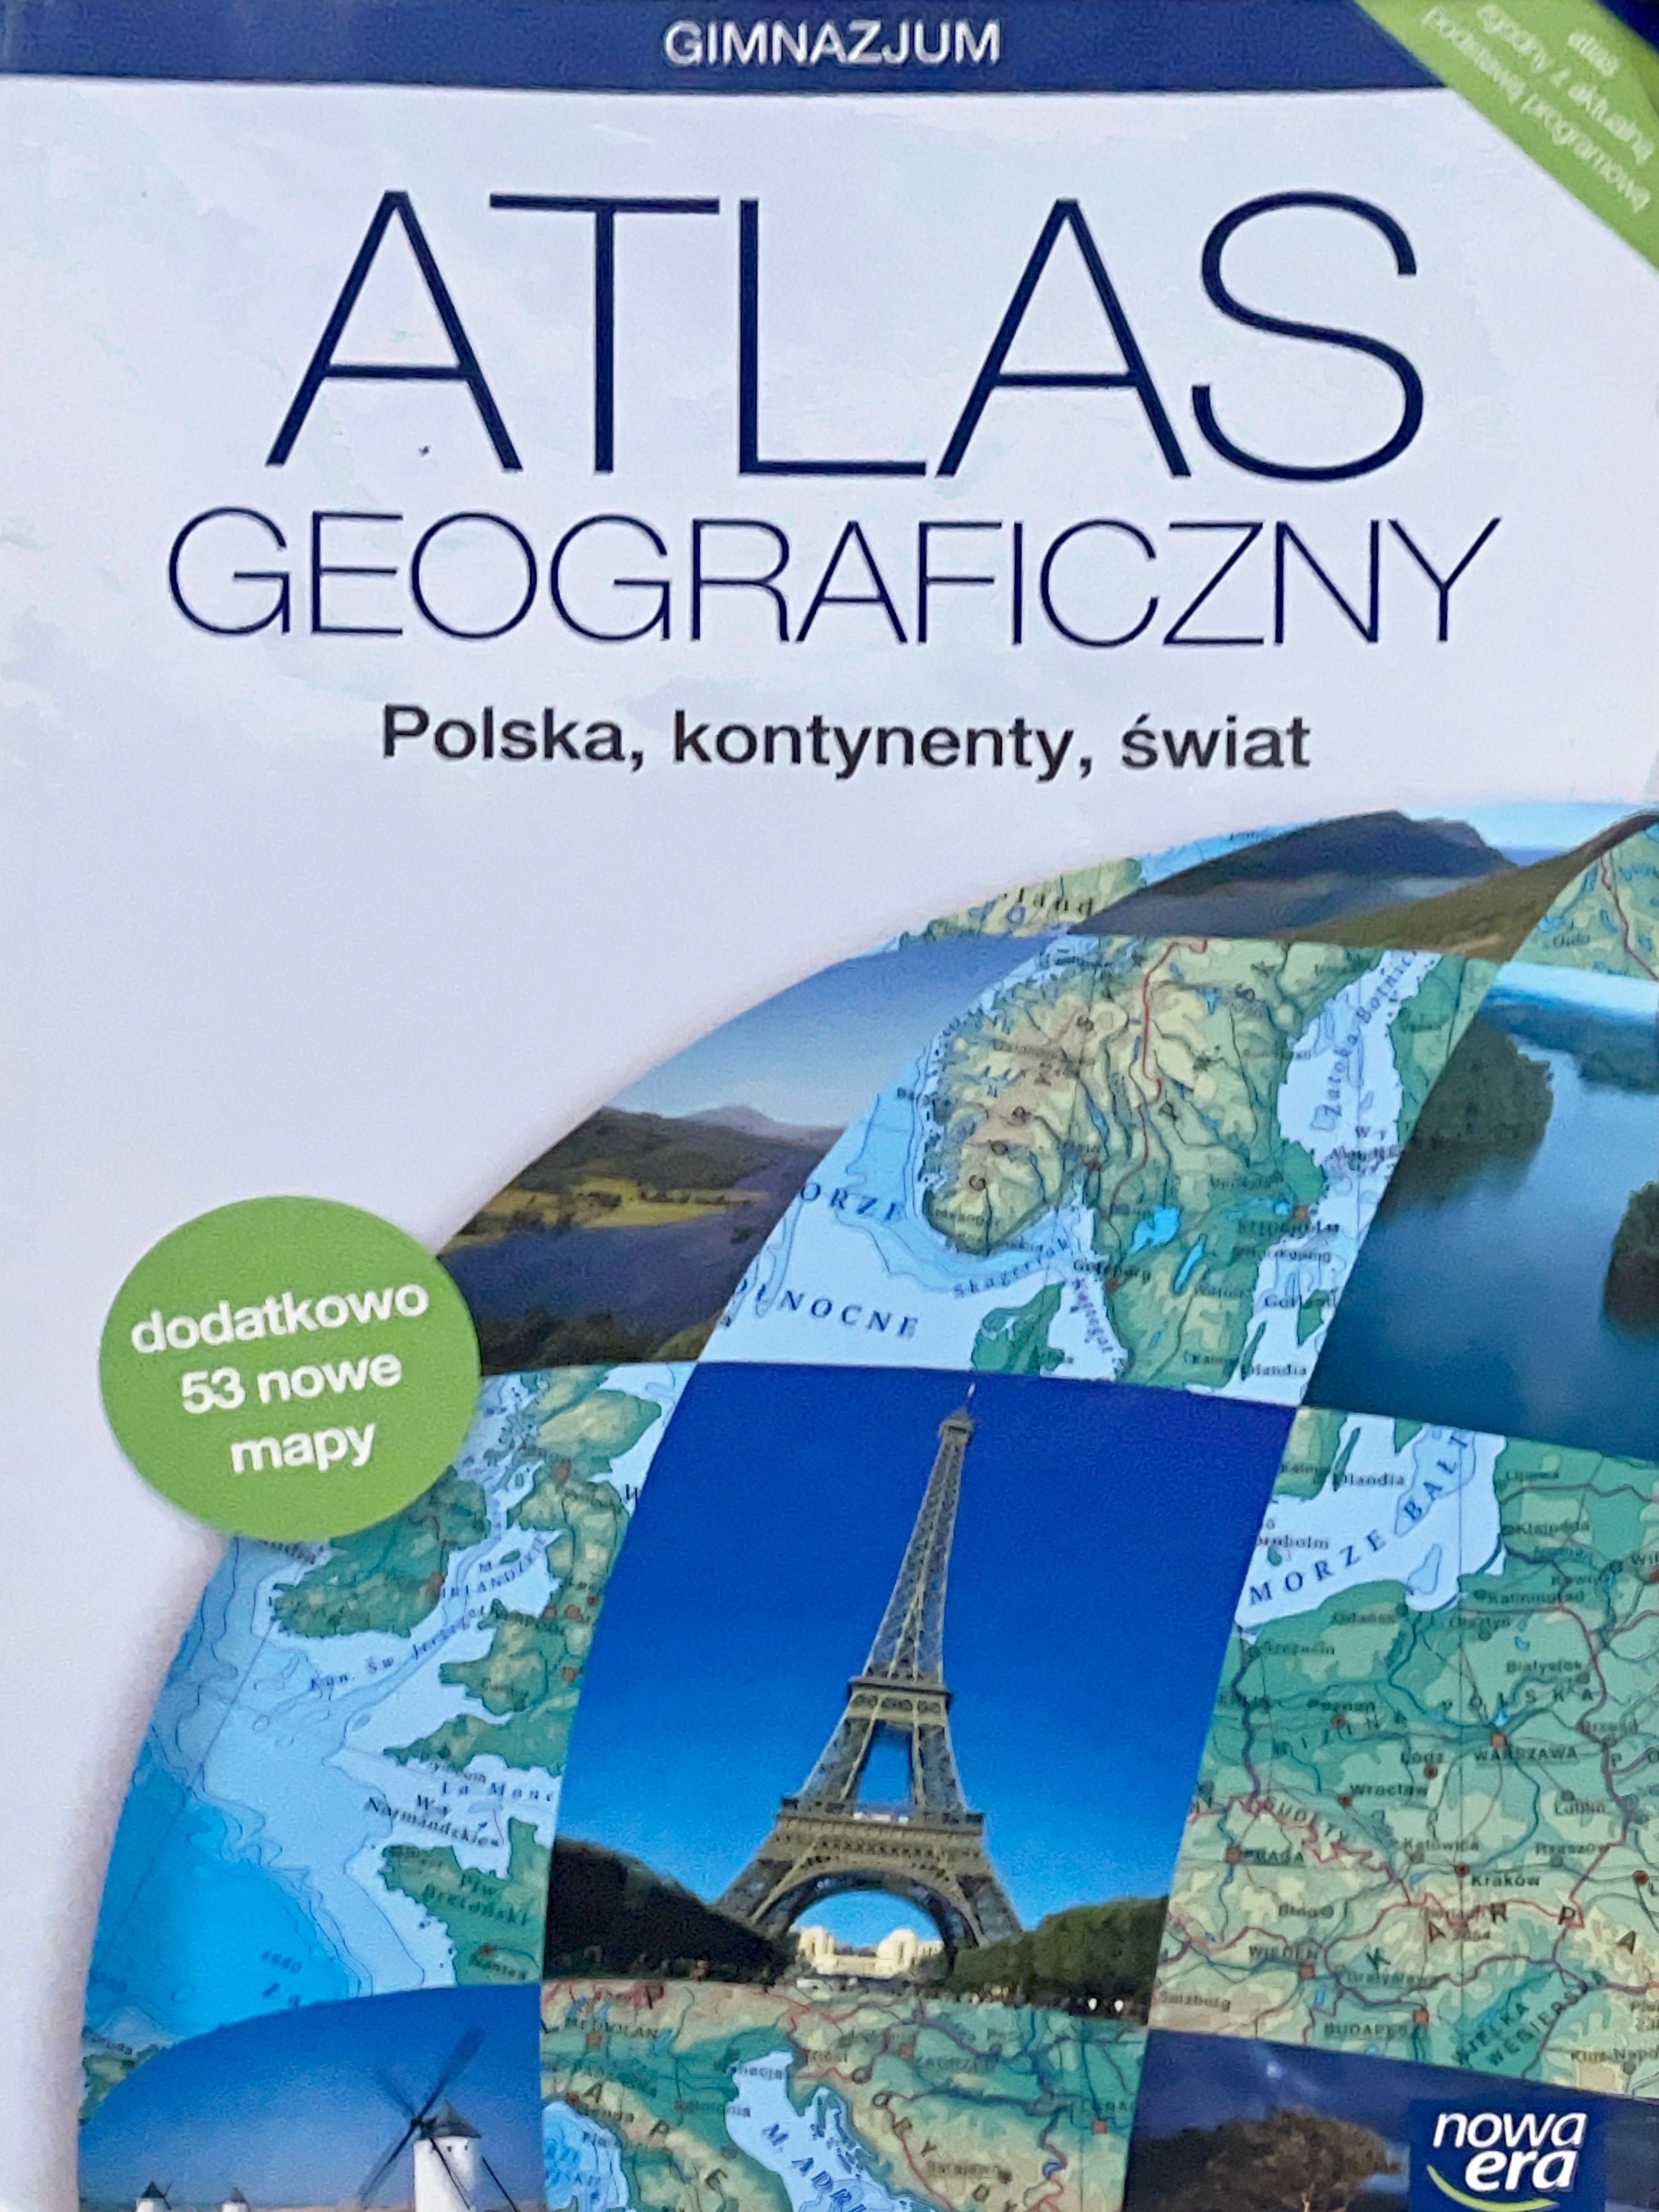 ATLAS GEOGRAFICZNY „Polska,kontynenty,świat”